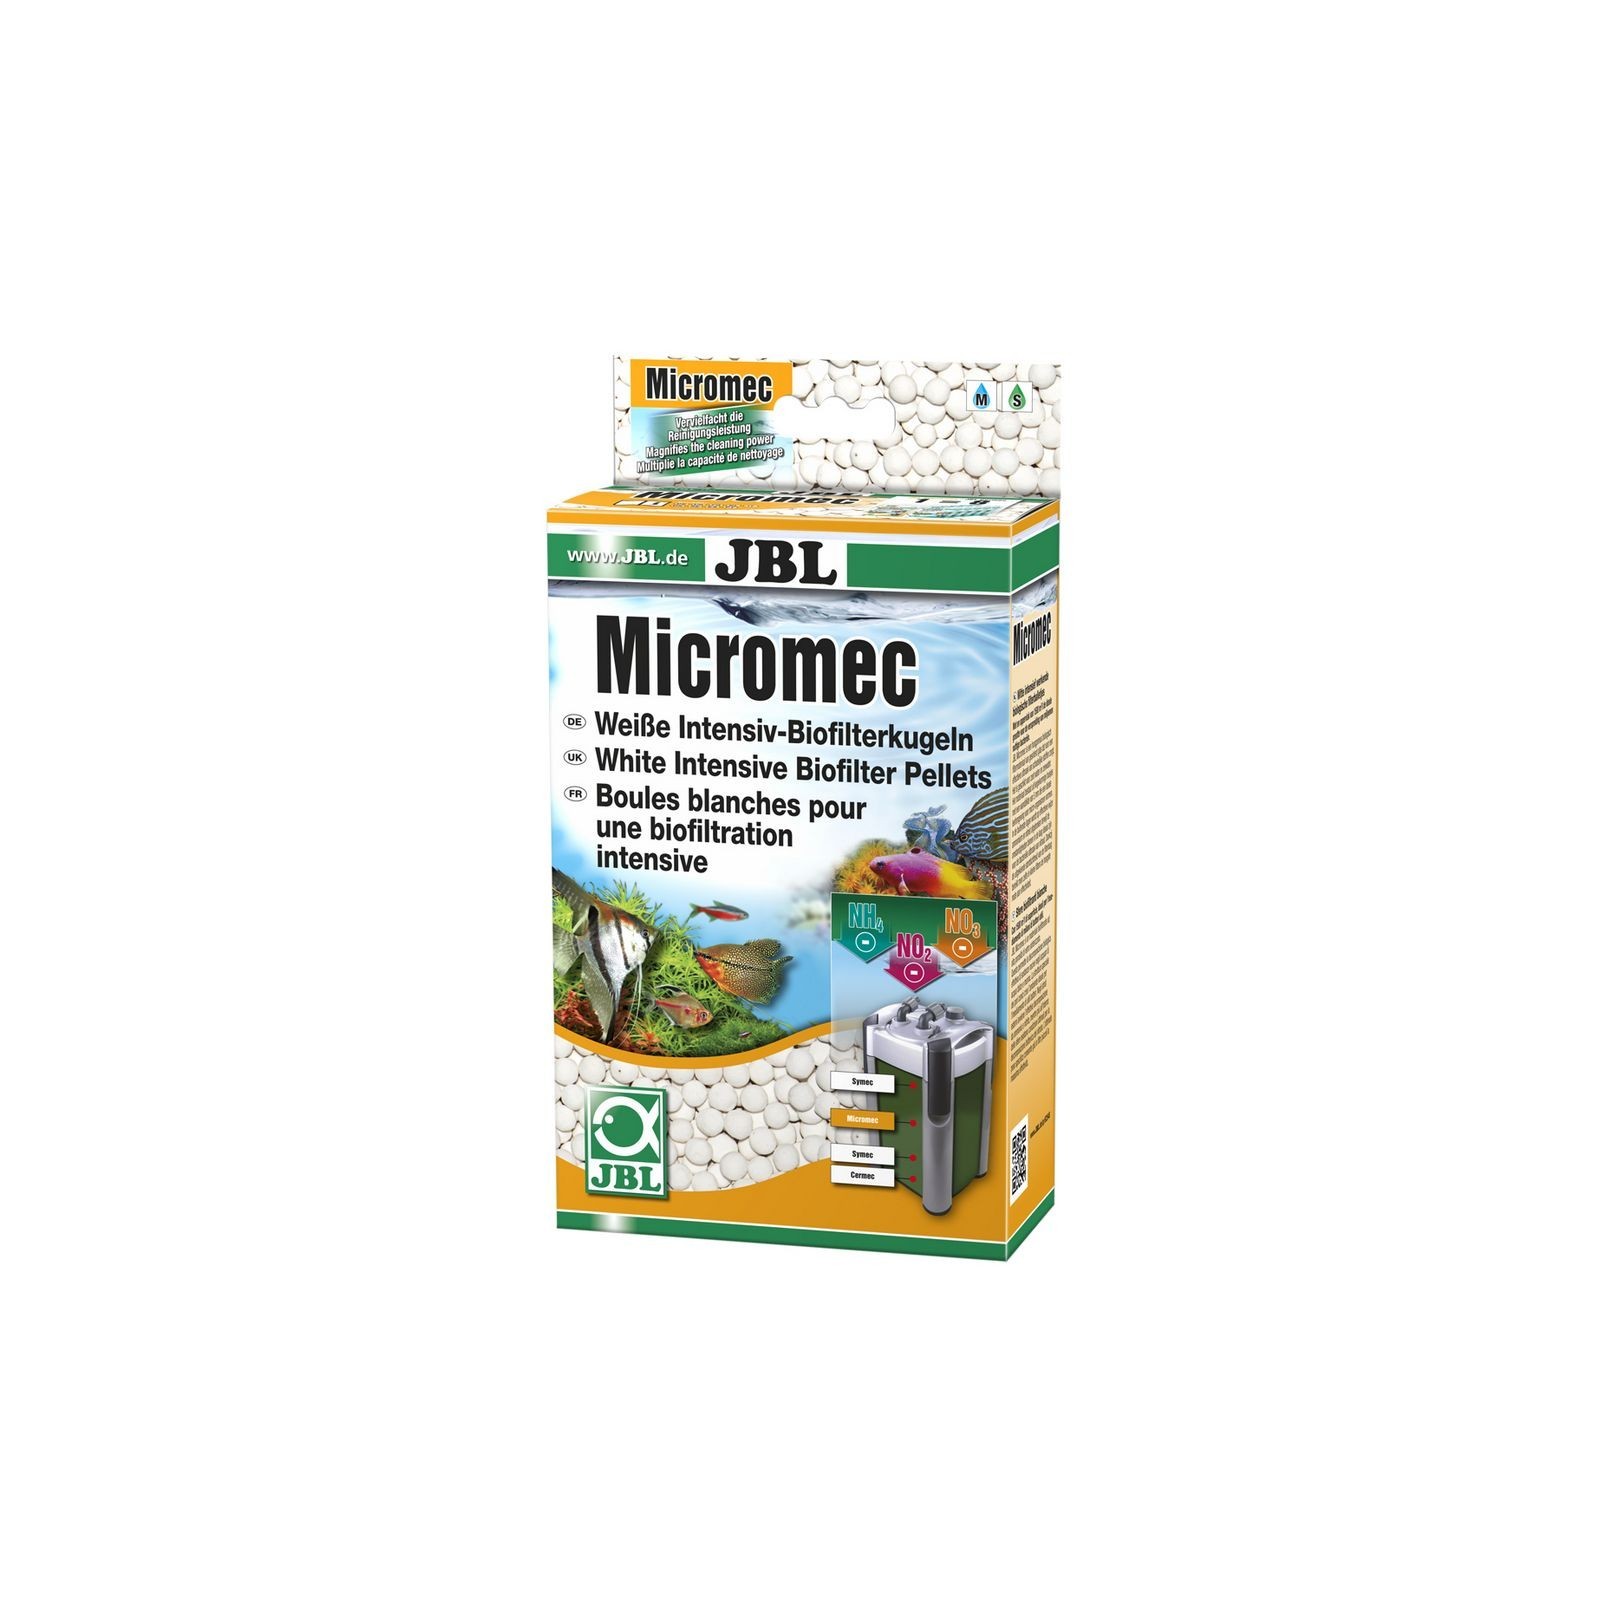 JBL MICROMEC 650g Sfere bianche bioflitranti intense per filtri d'acquario